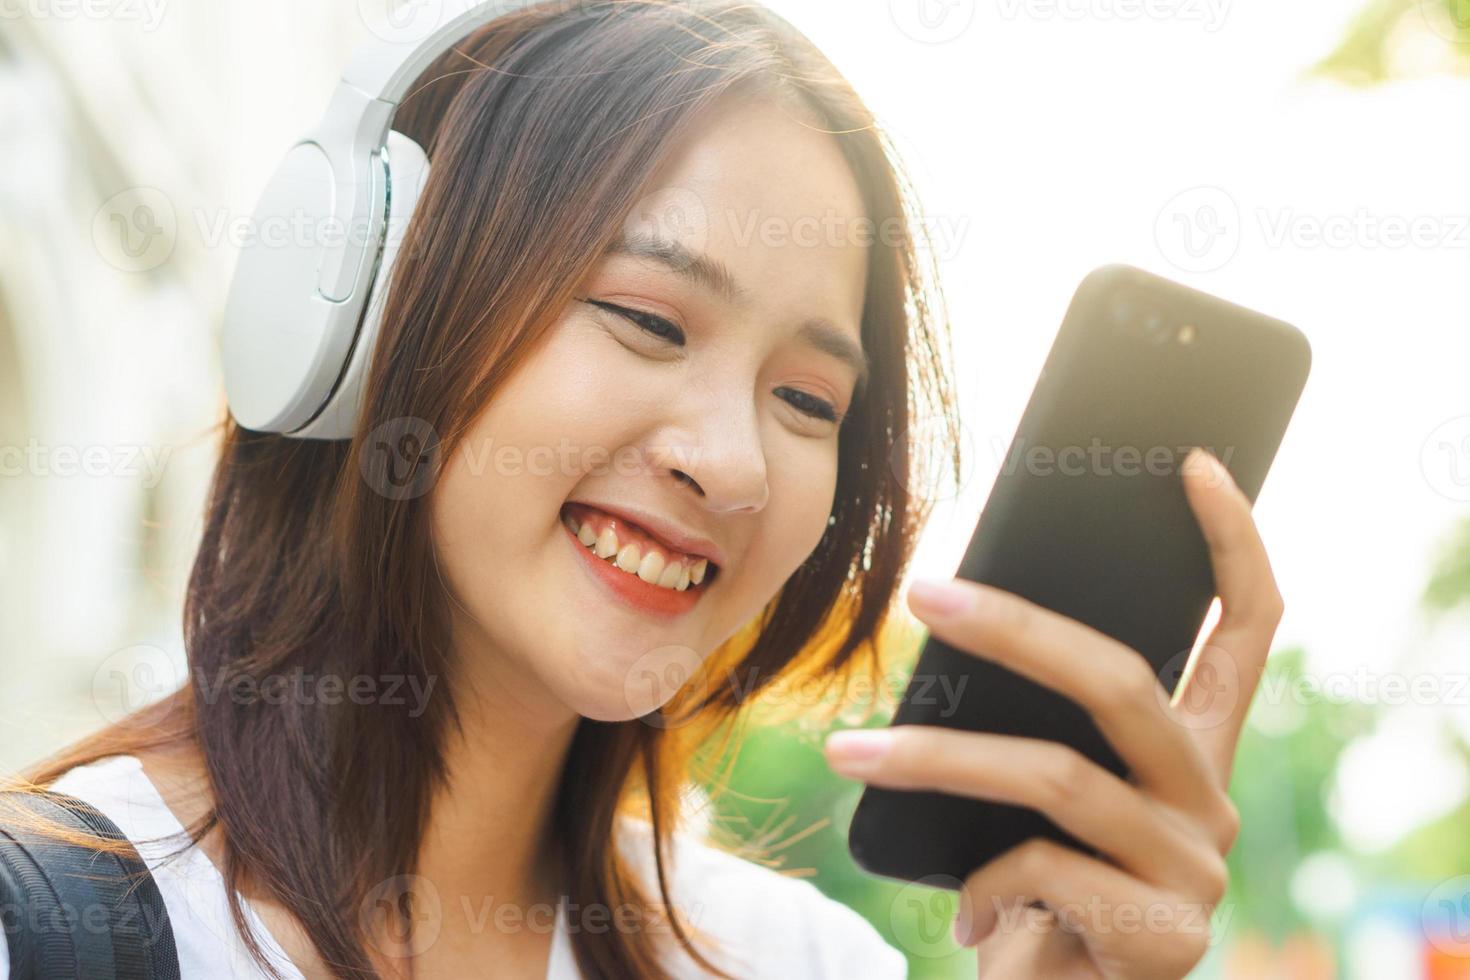 jong Aziatisch meisje dat tekst op haar telefoon leest en een koptelefoon draagt om op straat naar muziek te luisteren foto